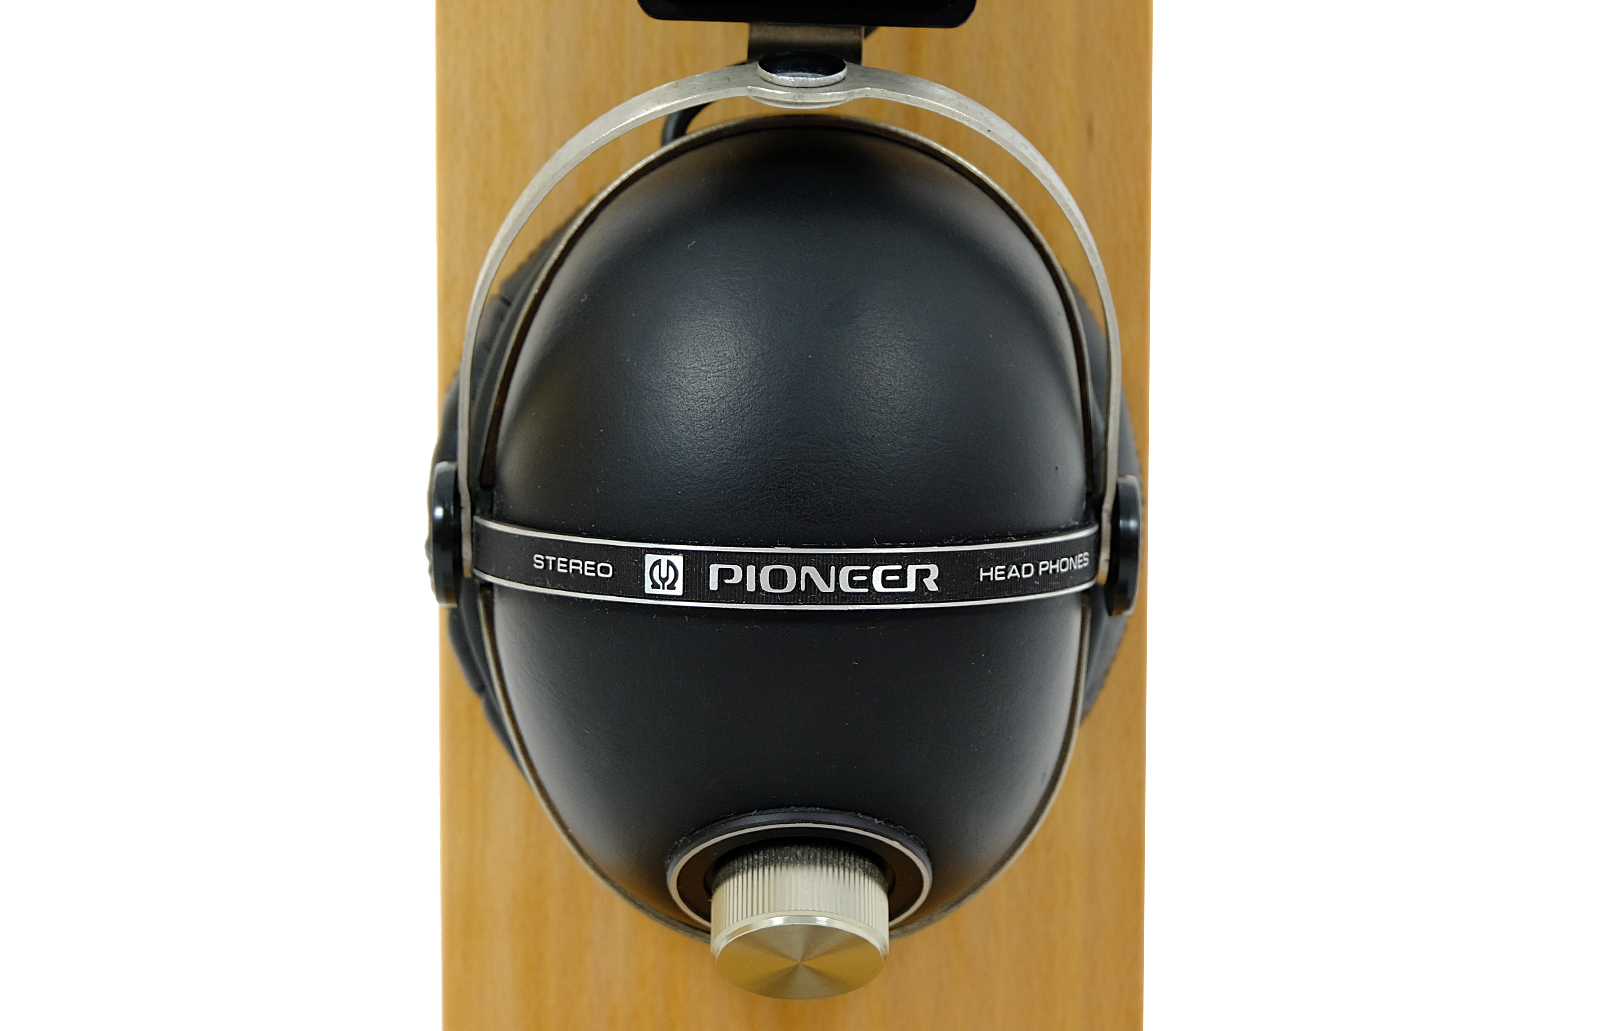 Pioneer SE-405 headphones